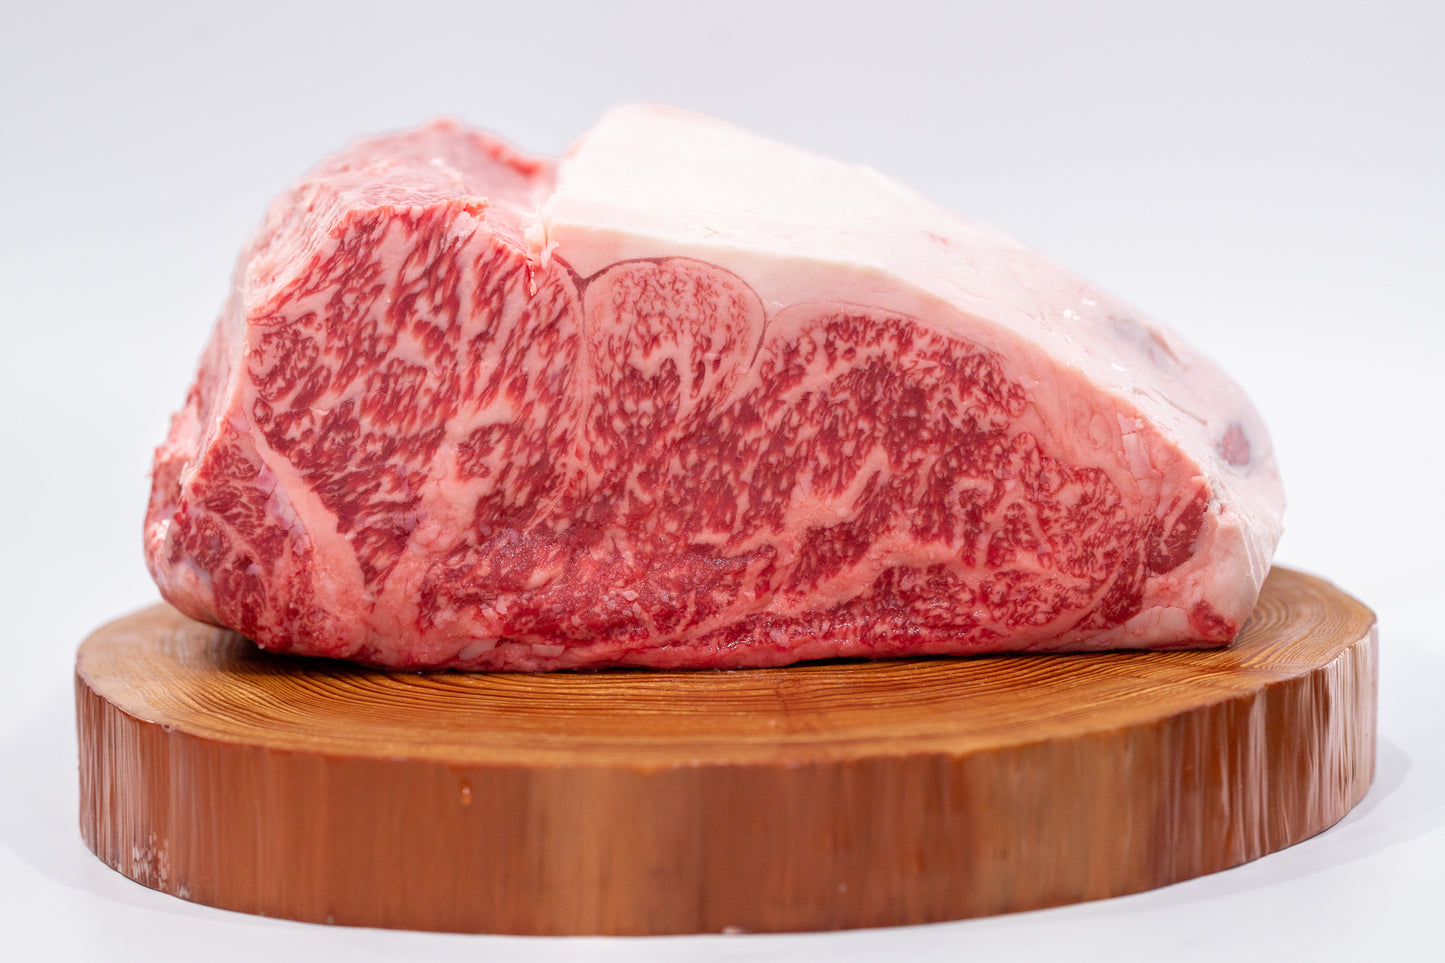 ロースは、肩から腰の部位になります。 和牛本来の肉の旨味と良質な脂を味わうには、ステーキが一番！シンプルに塩胡椒だけで肉の味が引き立ちます。柔らかい肉質に脂の甘みが加わり、あか牛の旨さをご堪能いただけます。